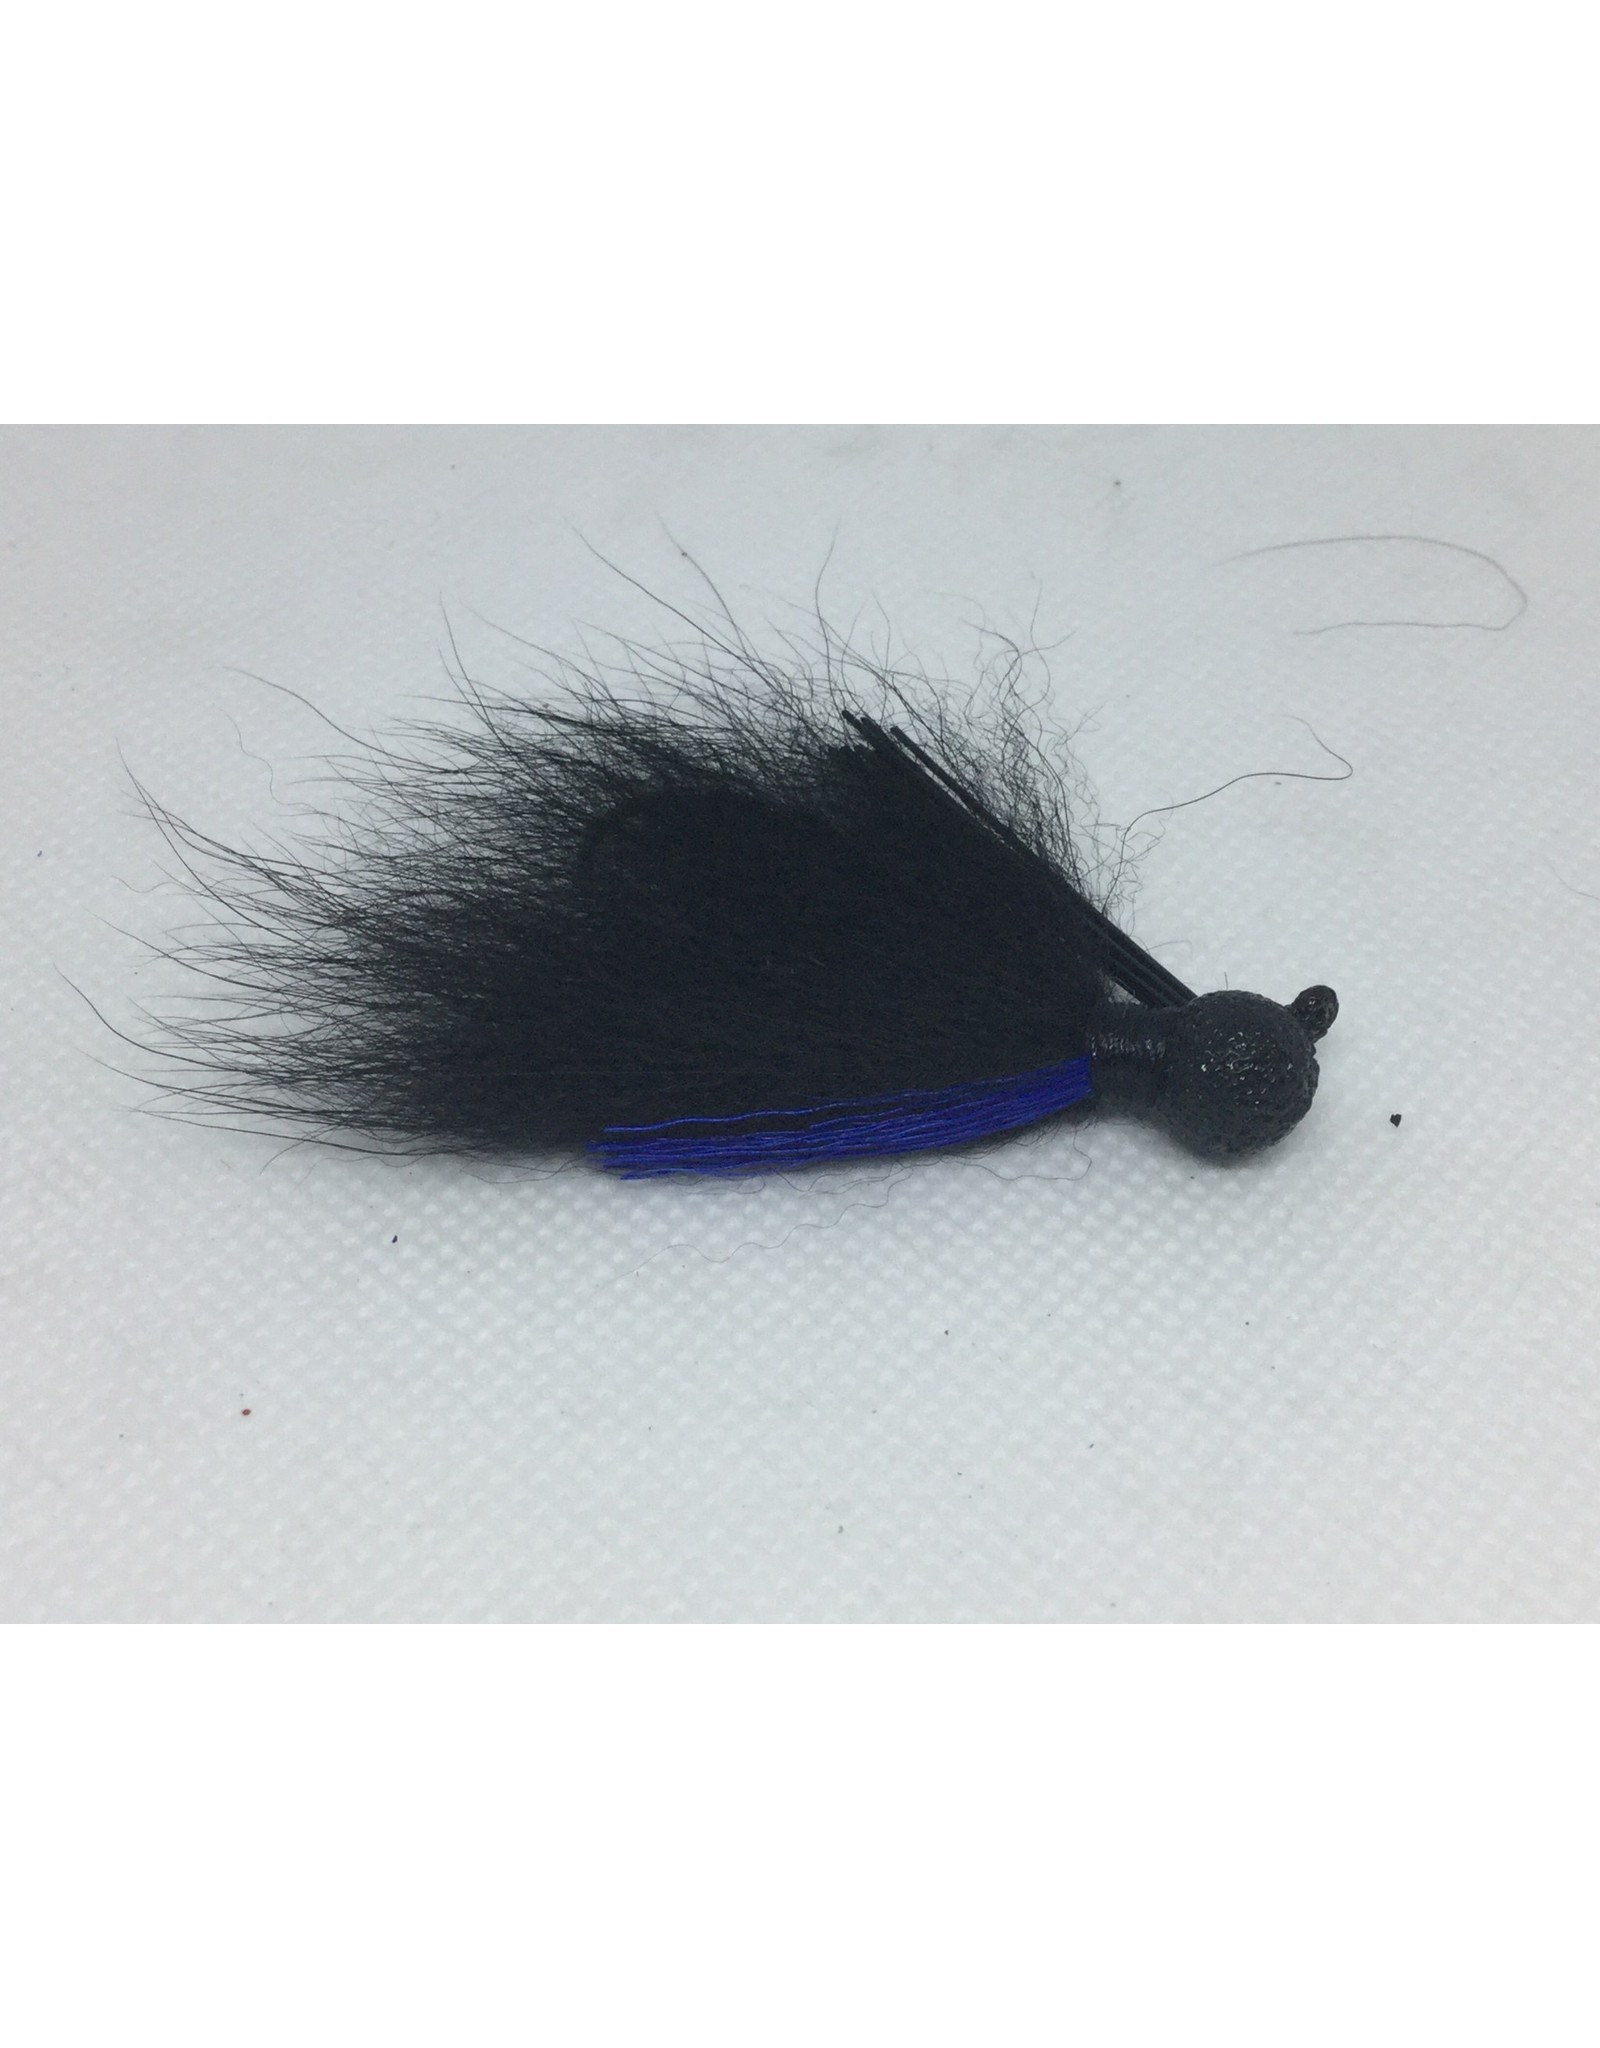 Yank-um Arctic Fox Hair Jig 3/16 oz